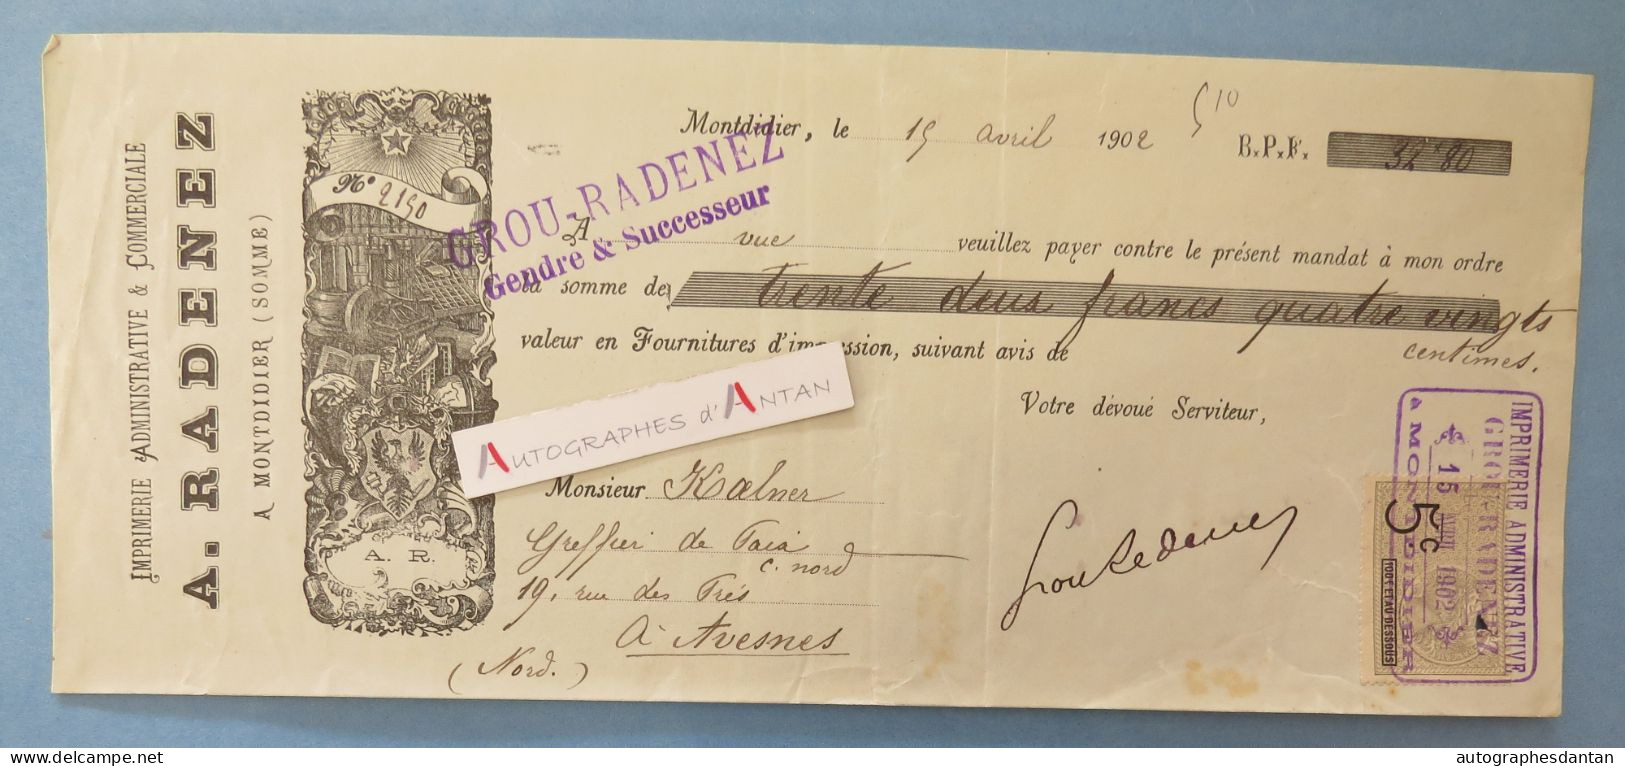 ● Montdidier 1902 - A. RADENEZ Imprimerie - Grou - Rare Mandat Illustré à M. Kalner à Avesnes - SOMME 80 Vieux Papier - Lettres De Change